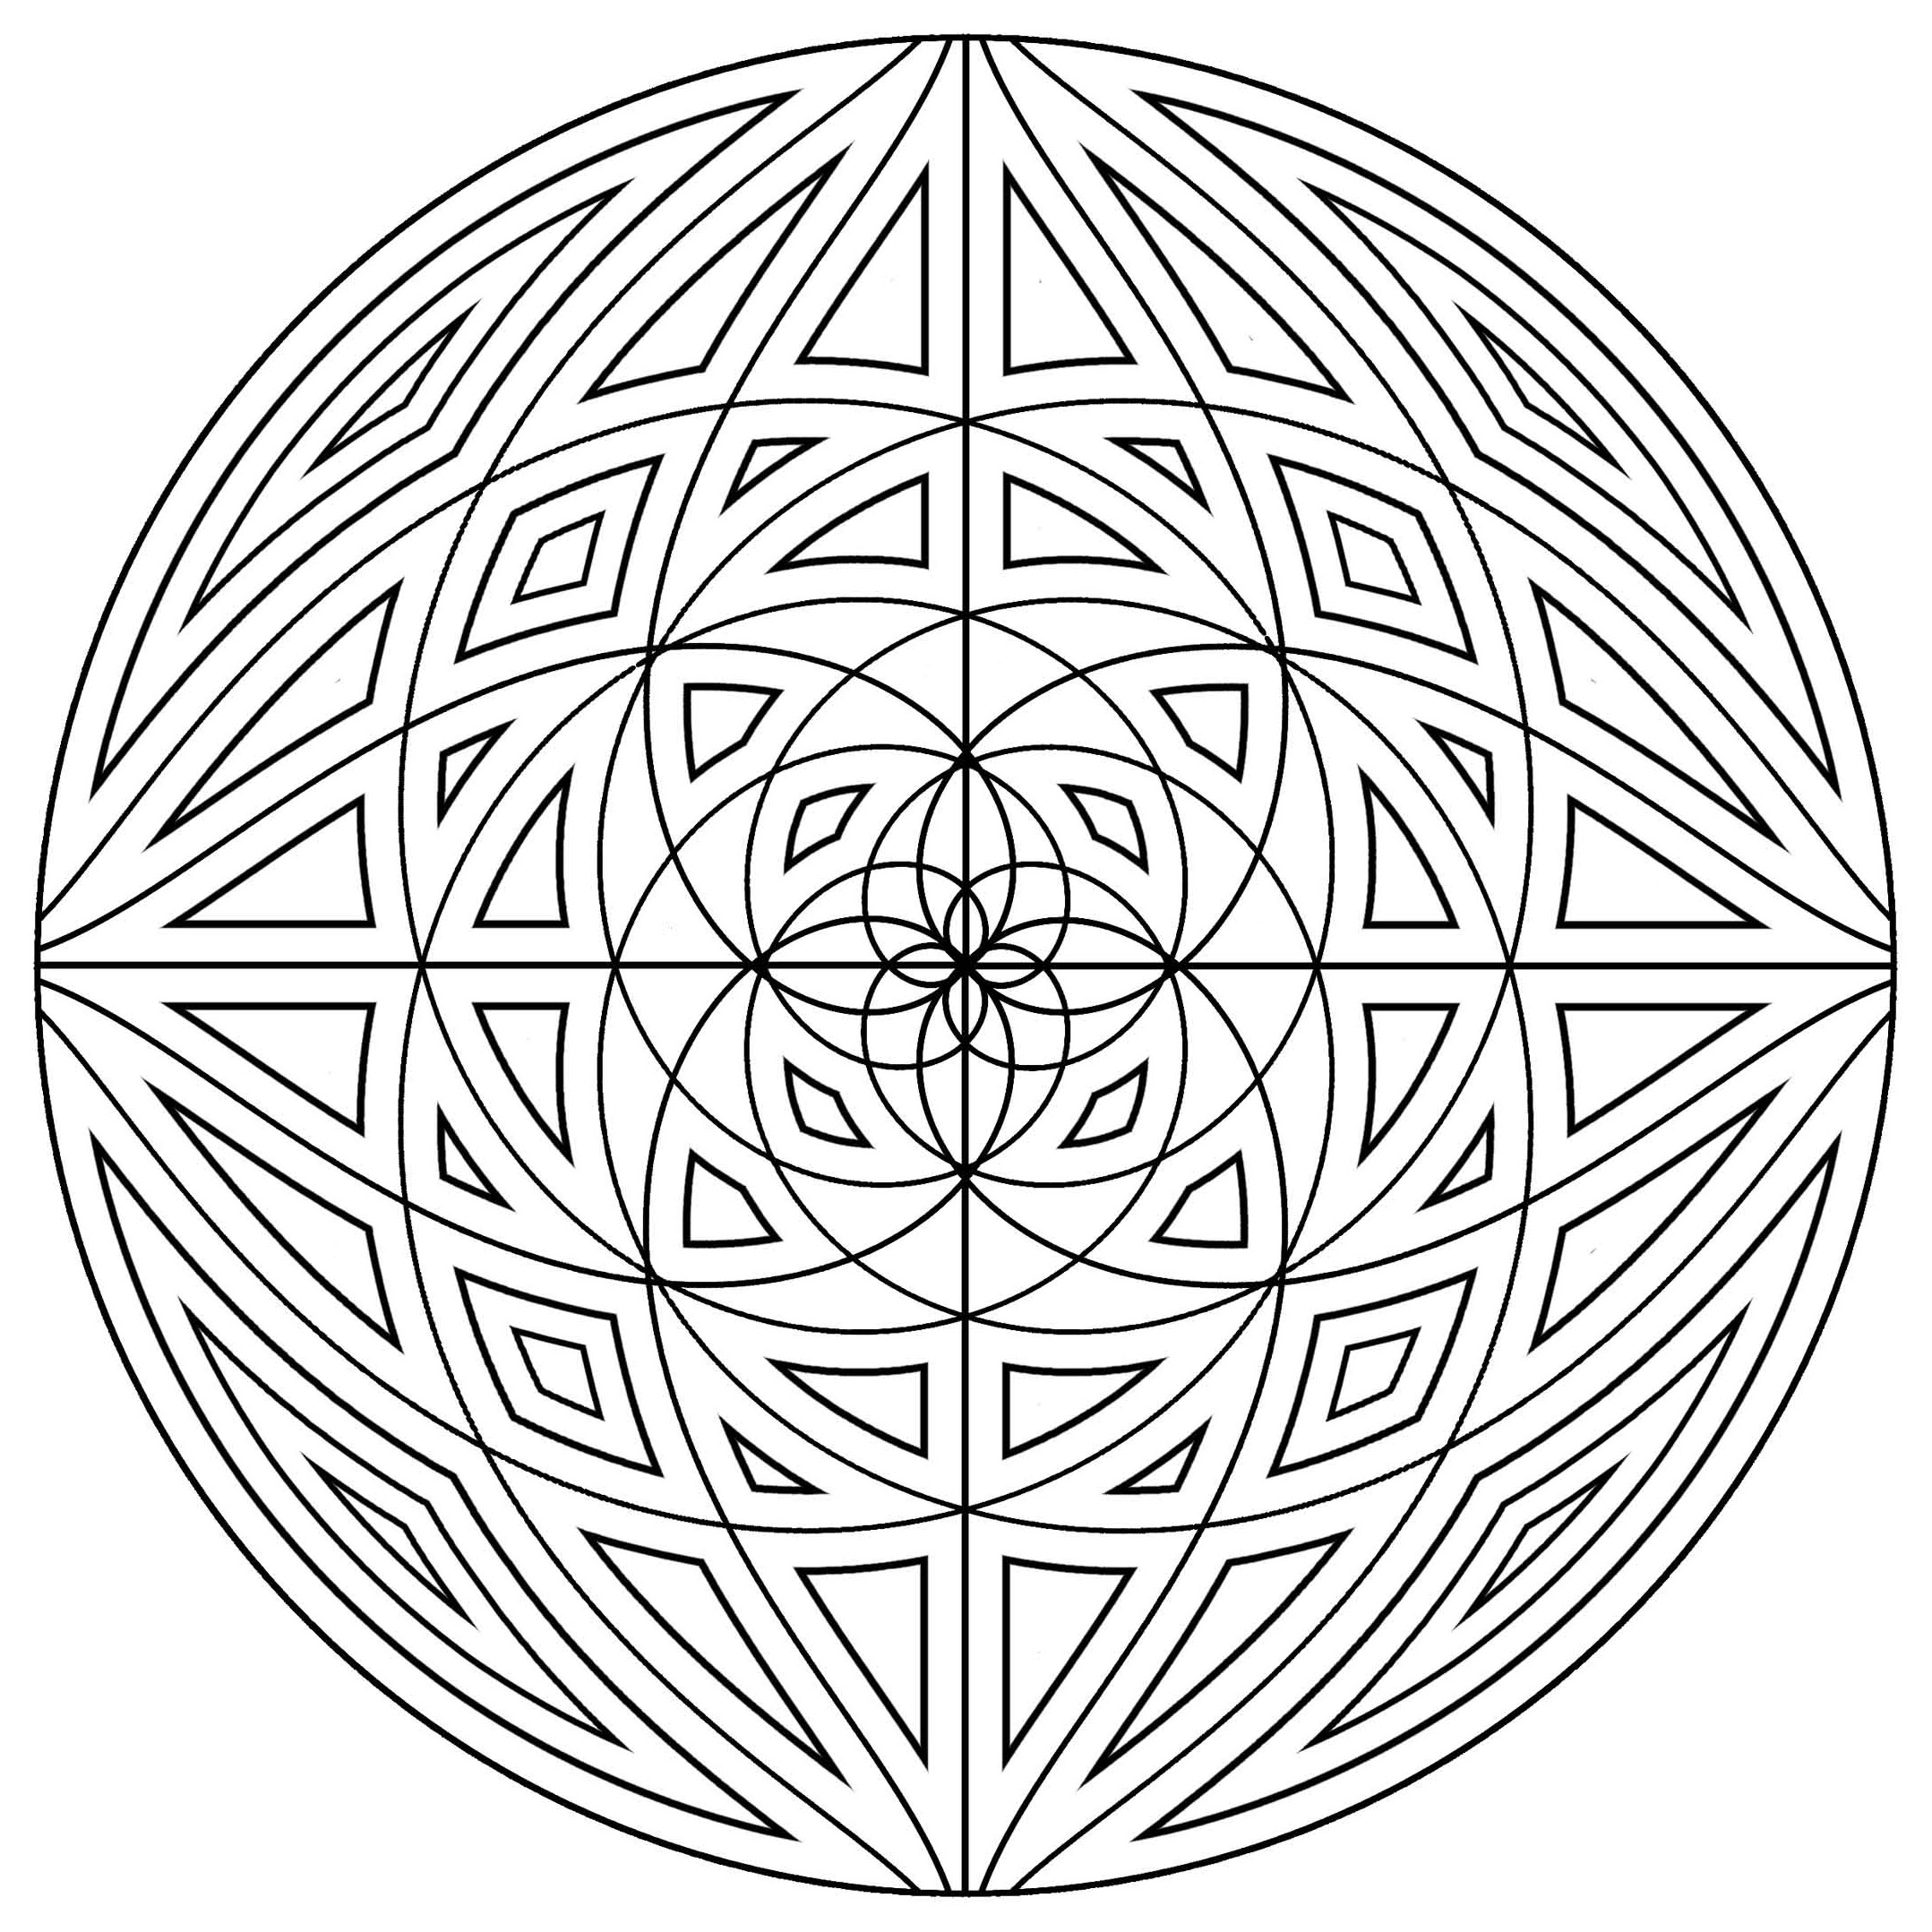 Si vous recherchez de l'harmonie, ce Mandala d'une grande qualité vous conviendra sans doute. A vous de trouver la meilleure méthode et technique pour le colorier.